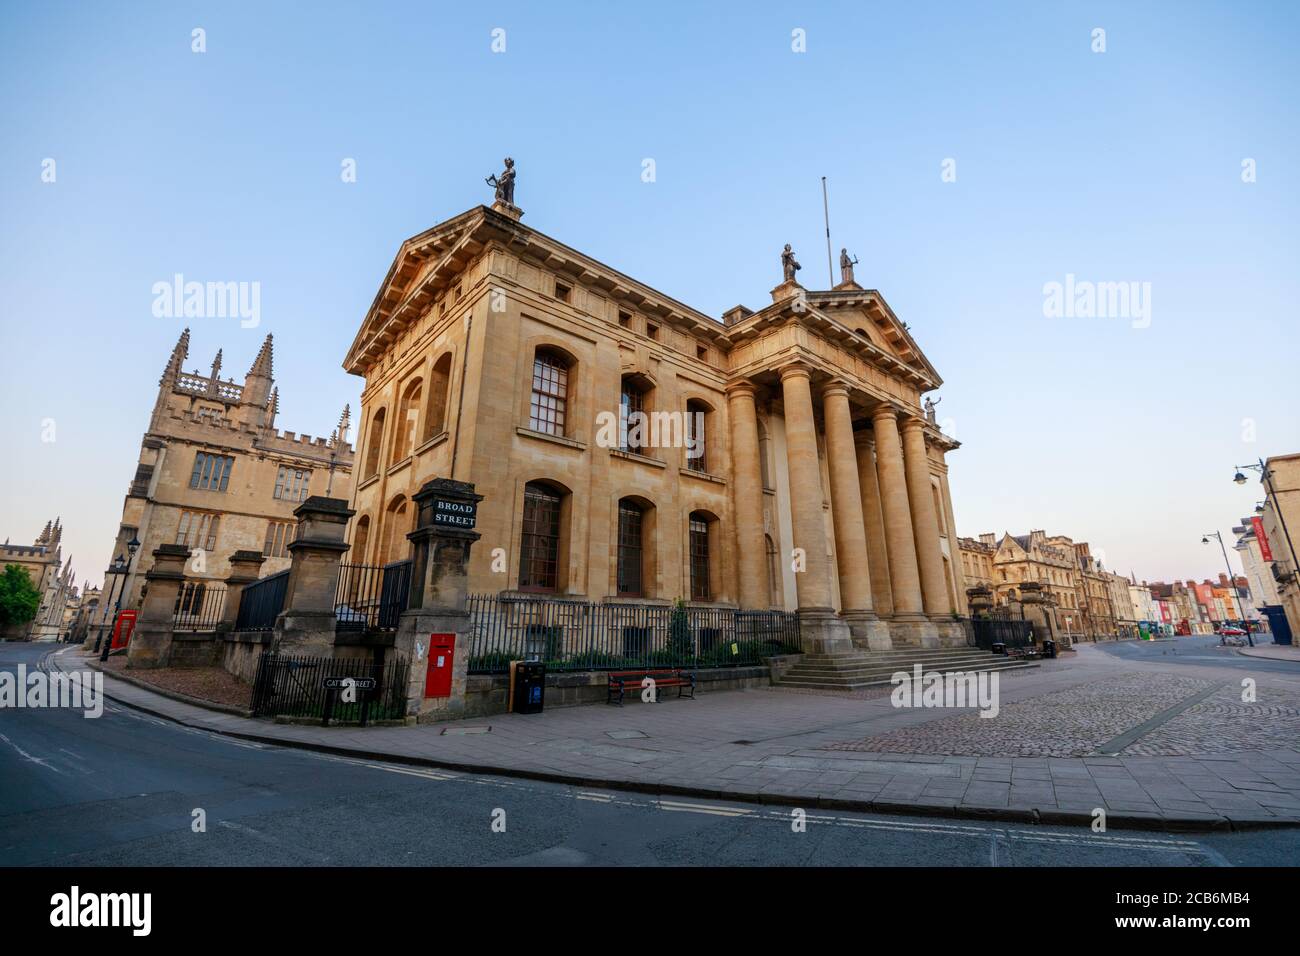 Le Clarendon Building et Broad Street à Oxford sans personne. Tôt le matin. Oxford, Angleterre, Royaume-Uni. Banque D'Images